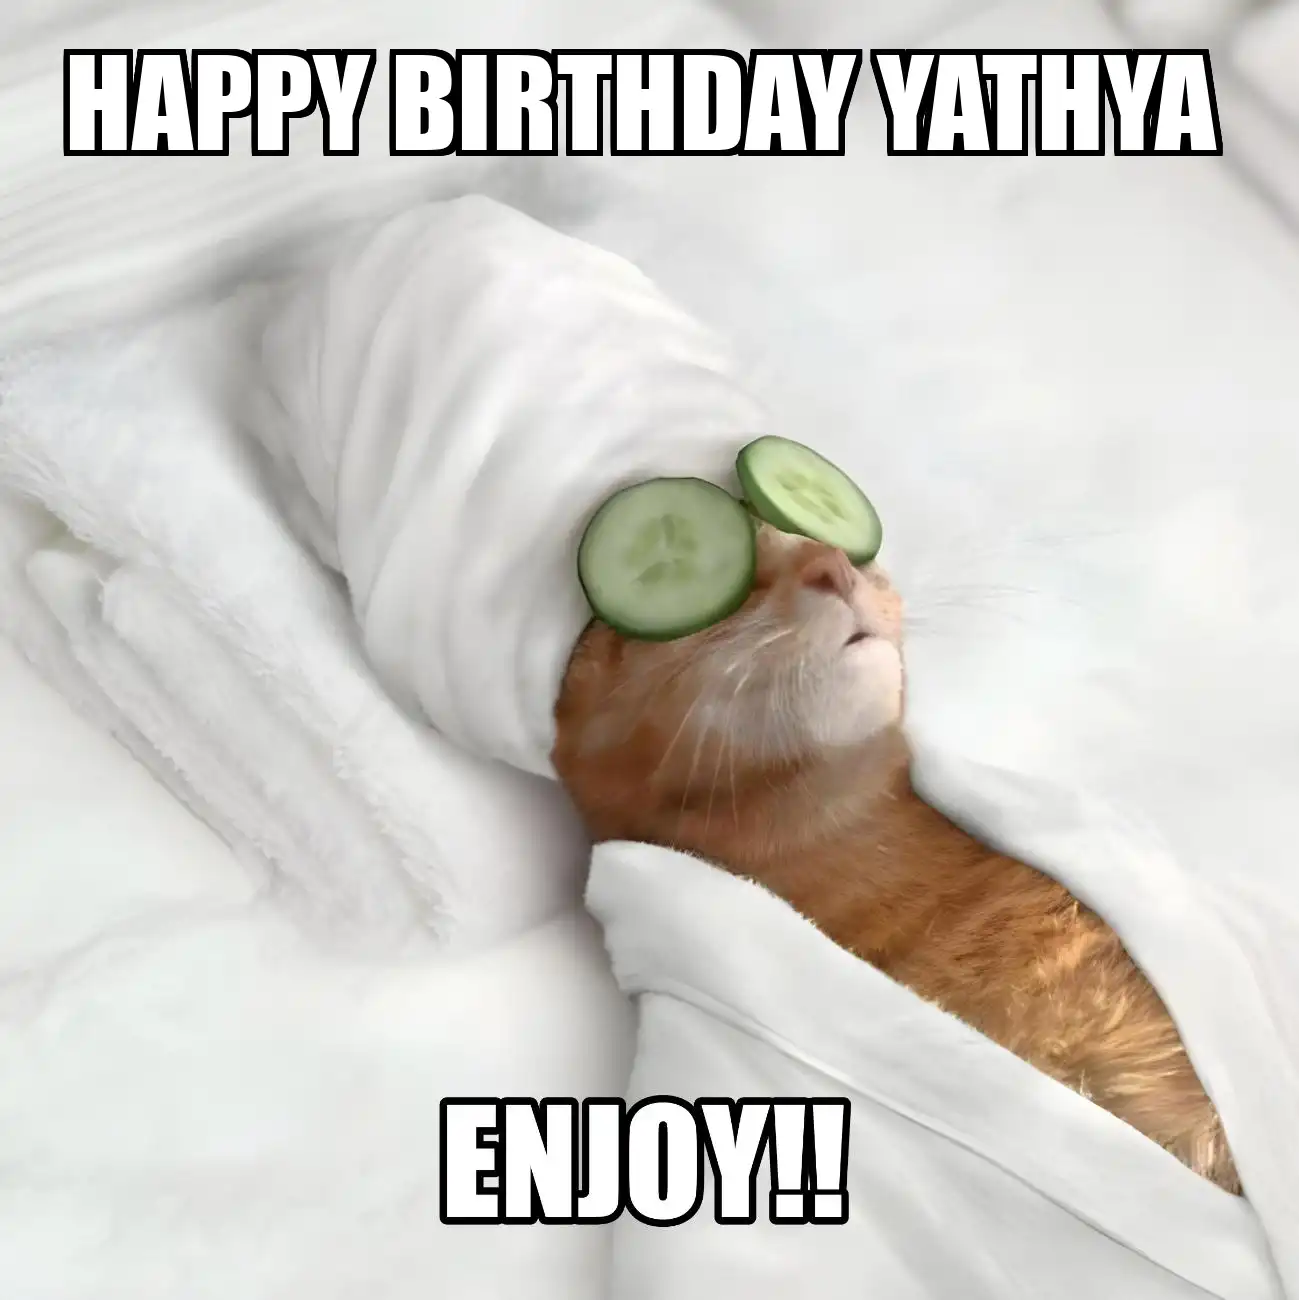 Happy Birthday Yathya Enjoy Cat Meme